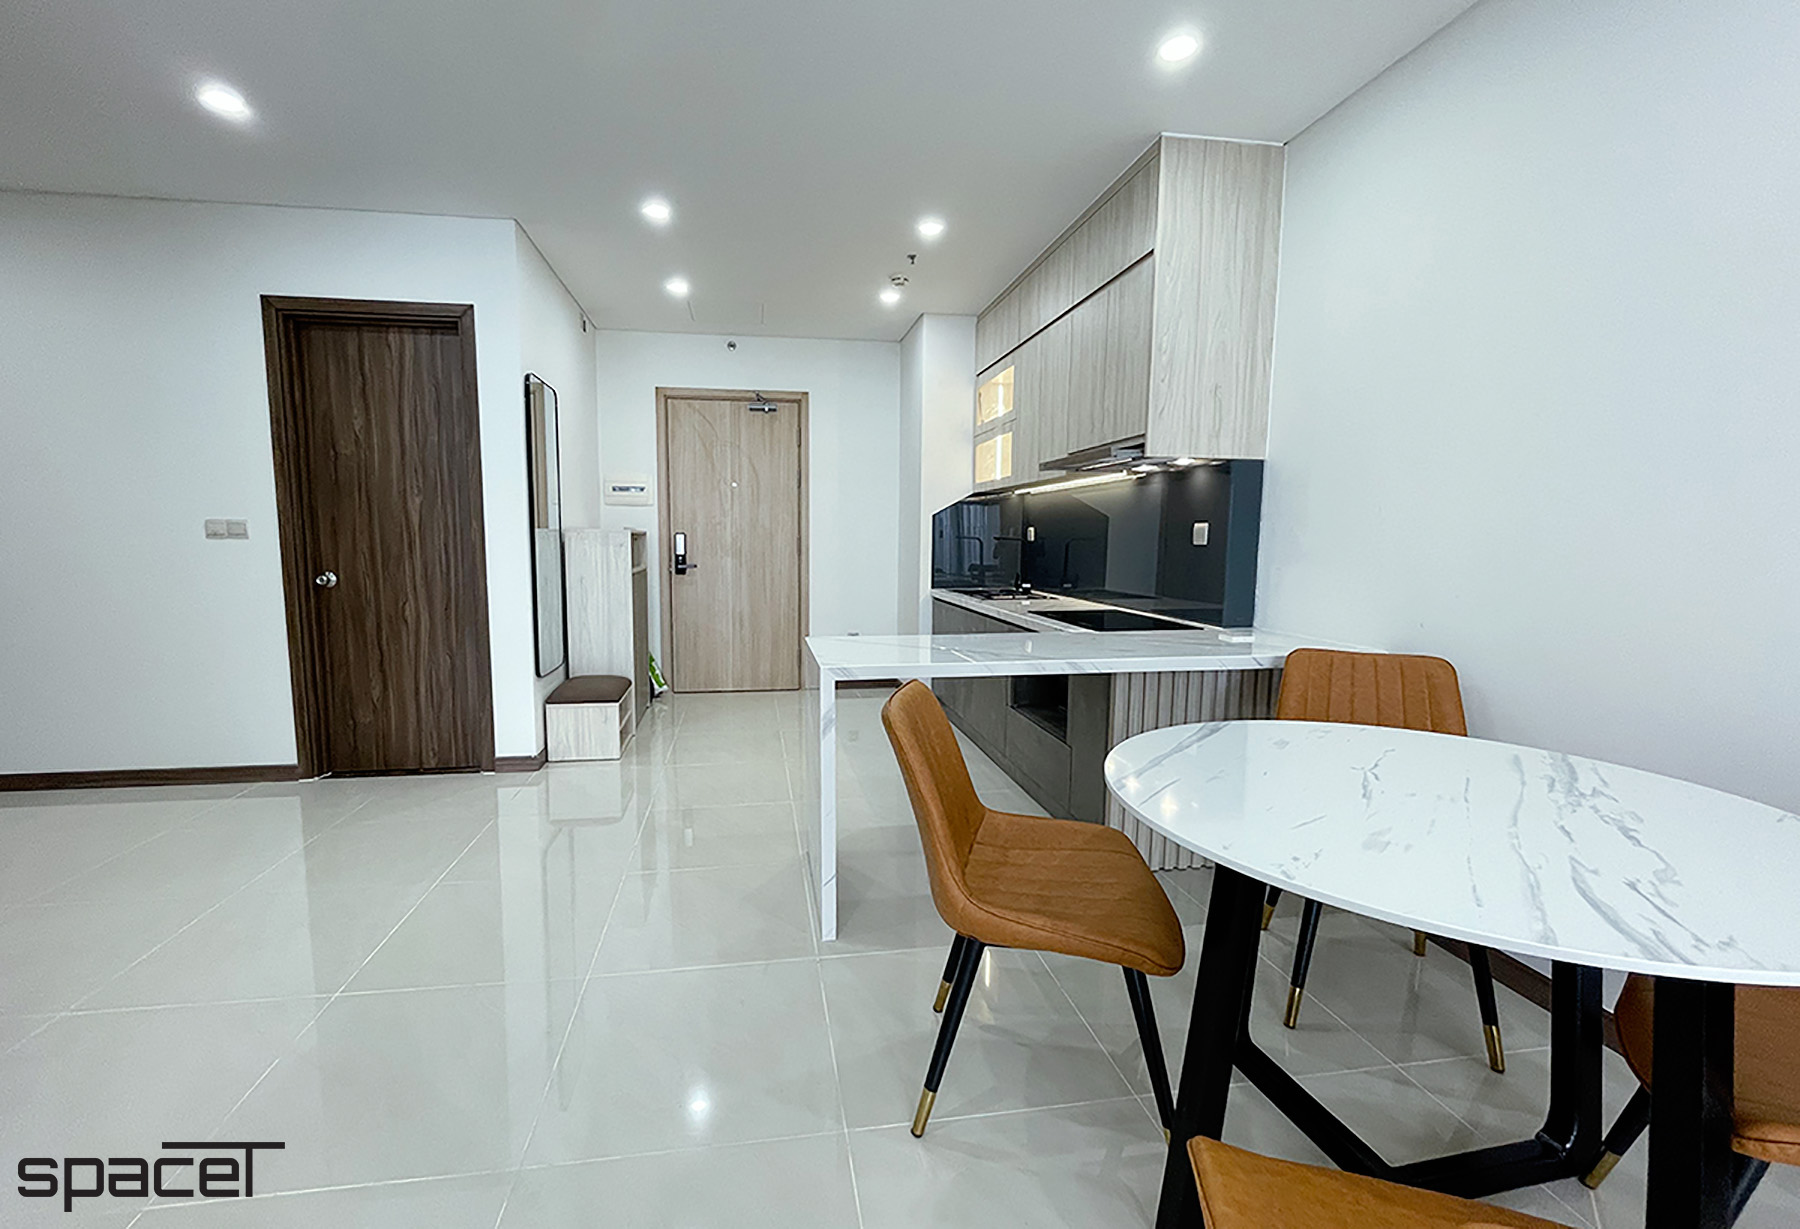 Phòng ăn, phong cách Hiện đại Modern, hoàn thiện nội thất, căn hộ Iris 4 Hà Đô Centrosa Garden